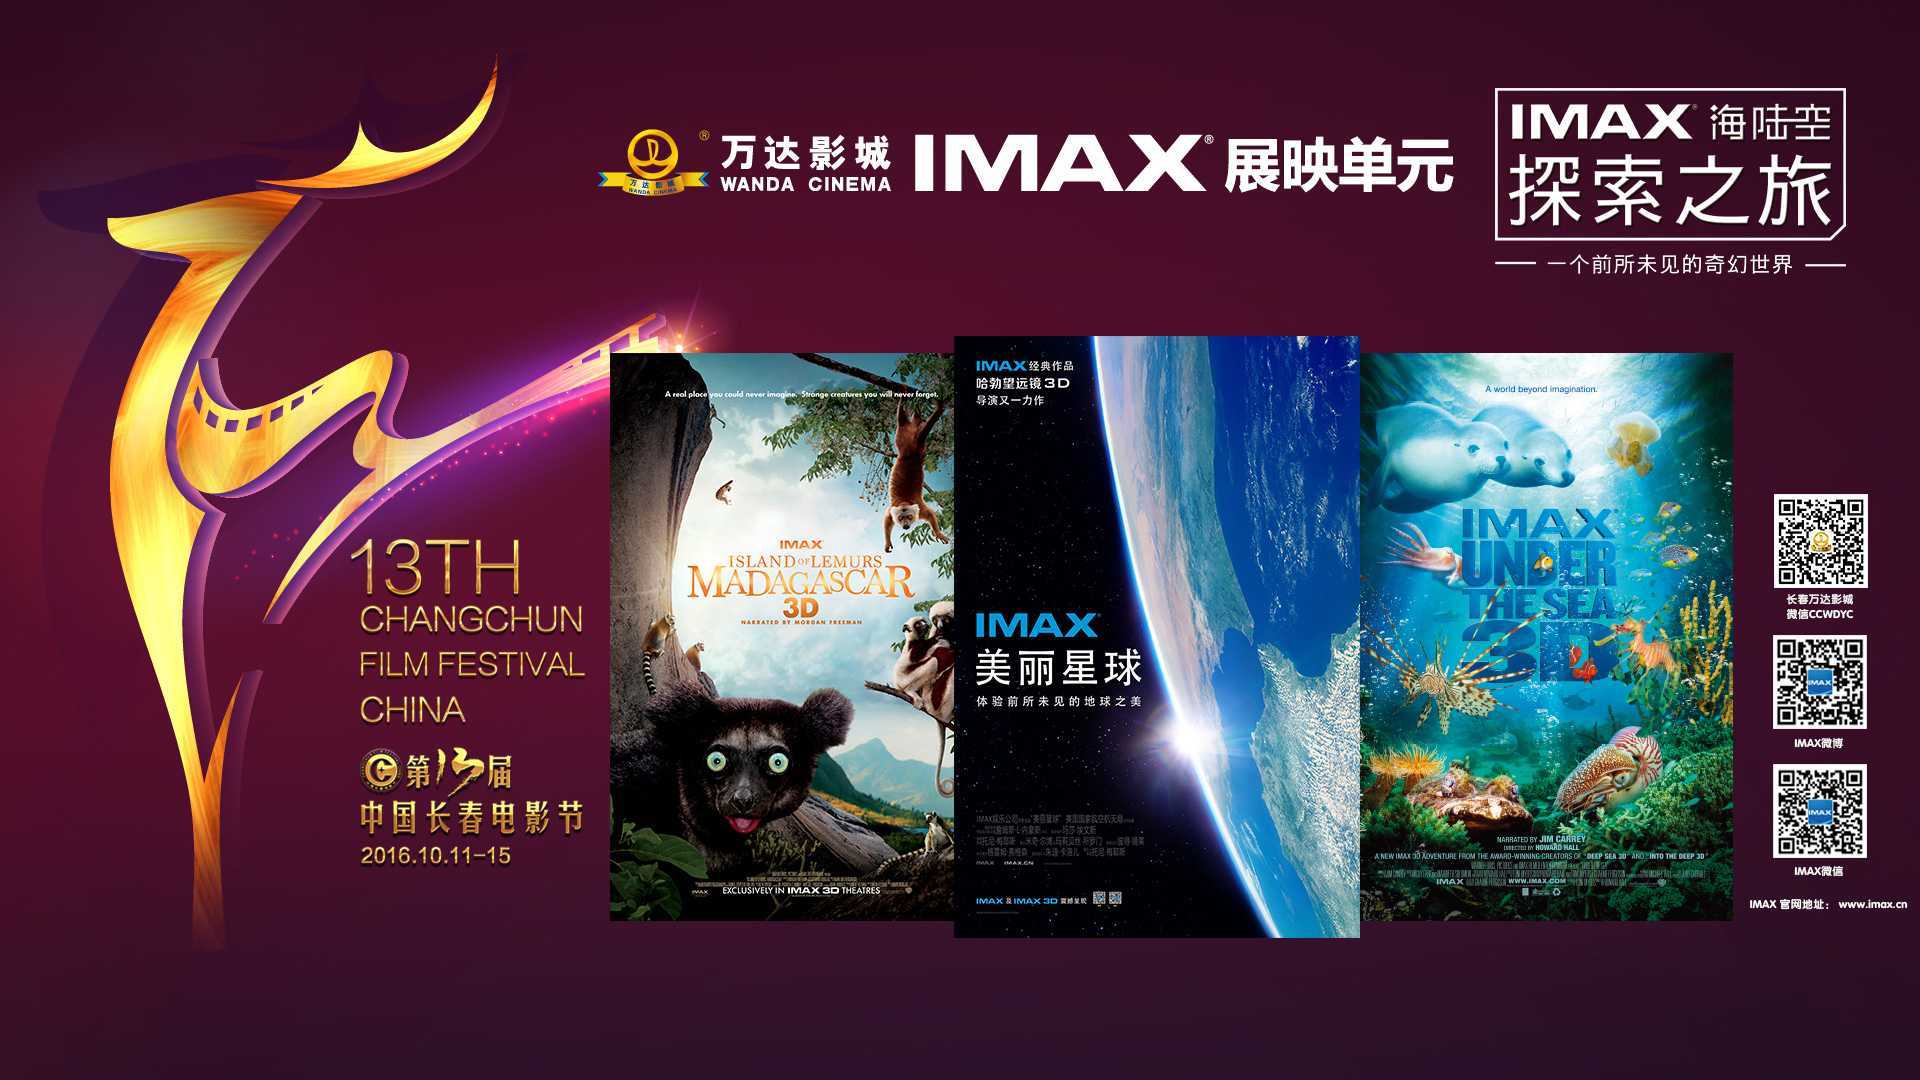 美丽星球 A Beautiful Planet  IMAX巨幕